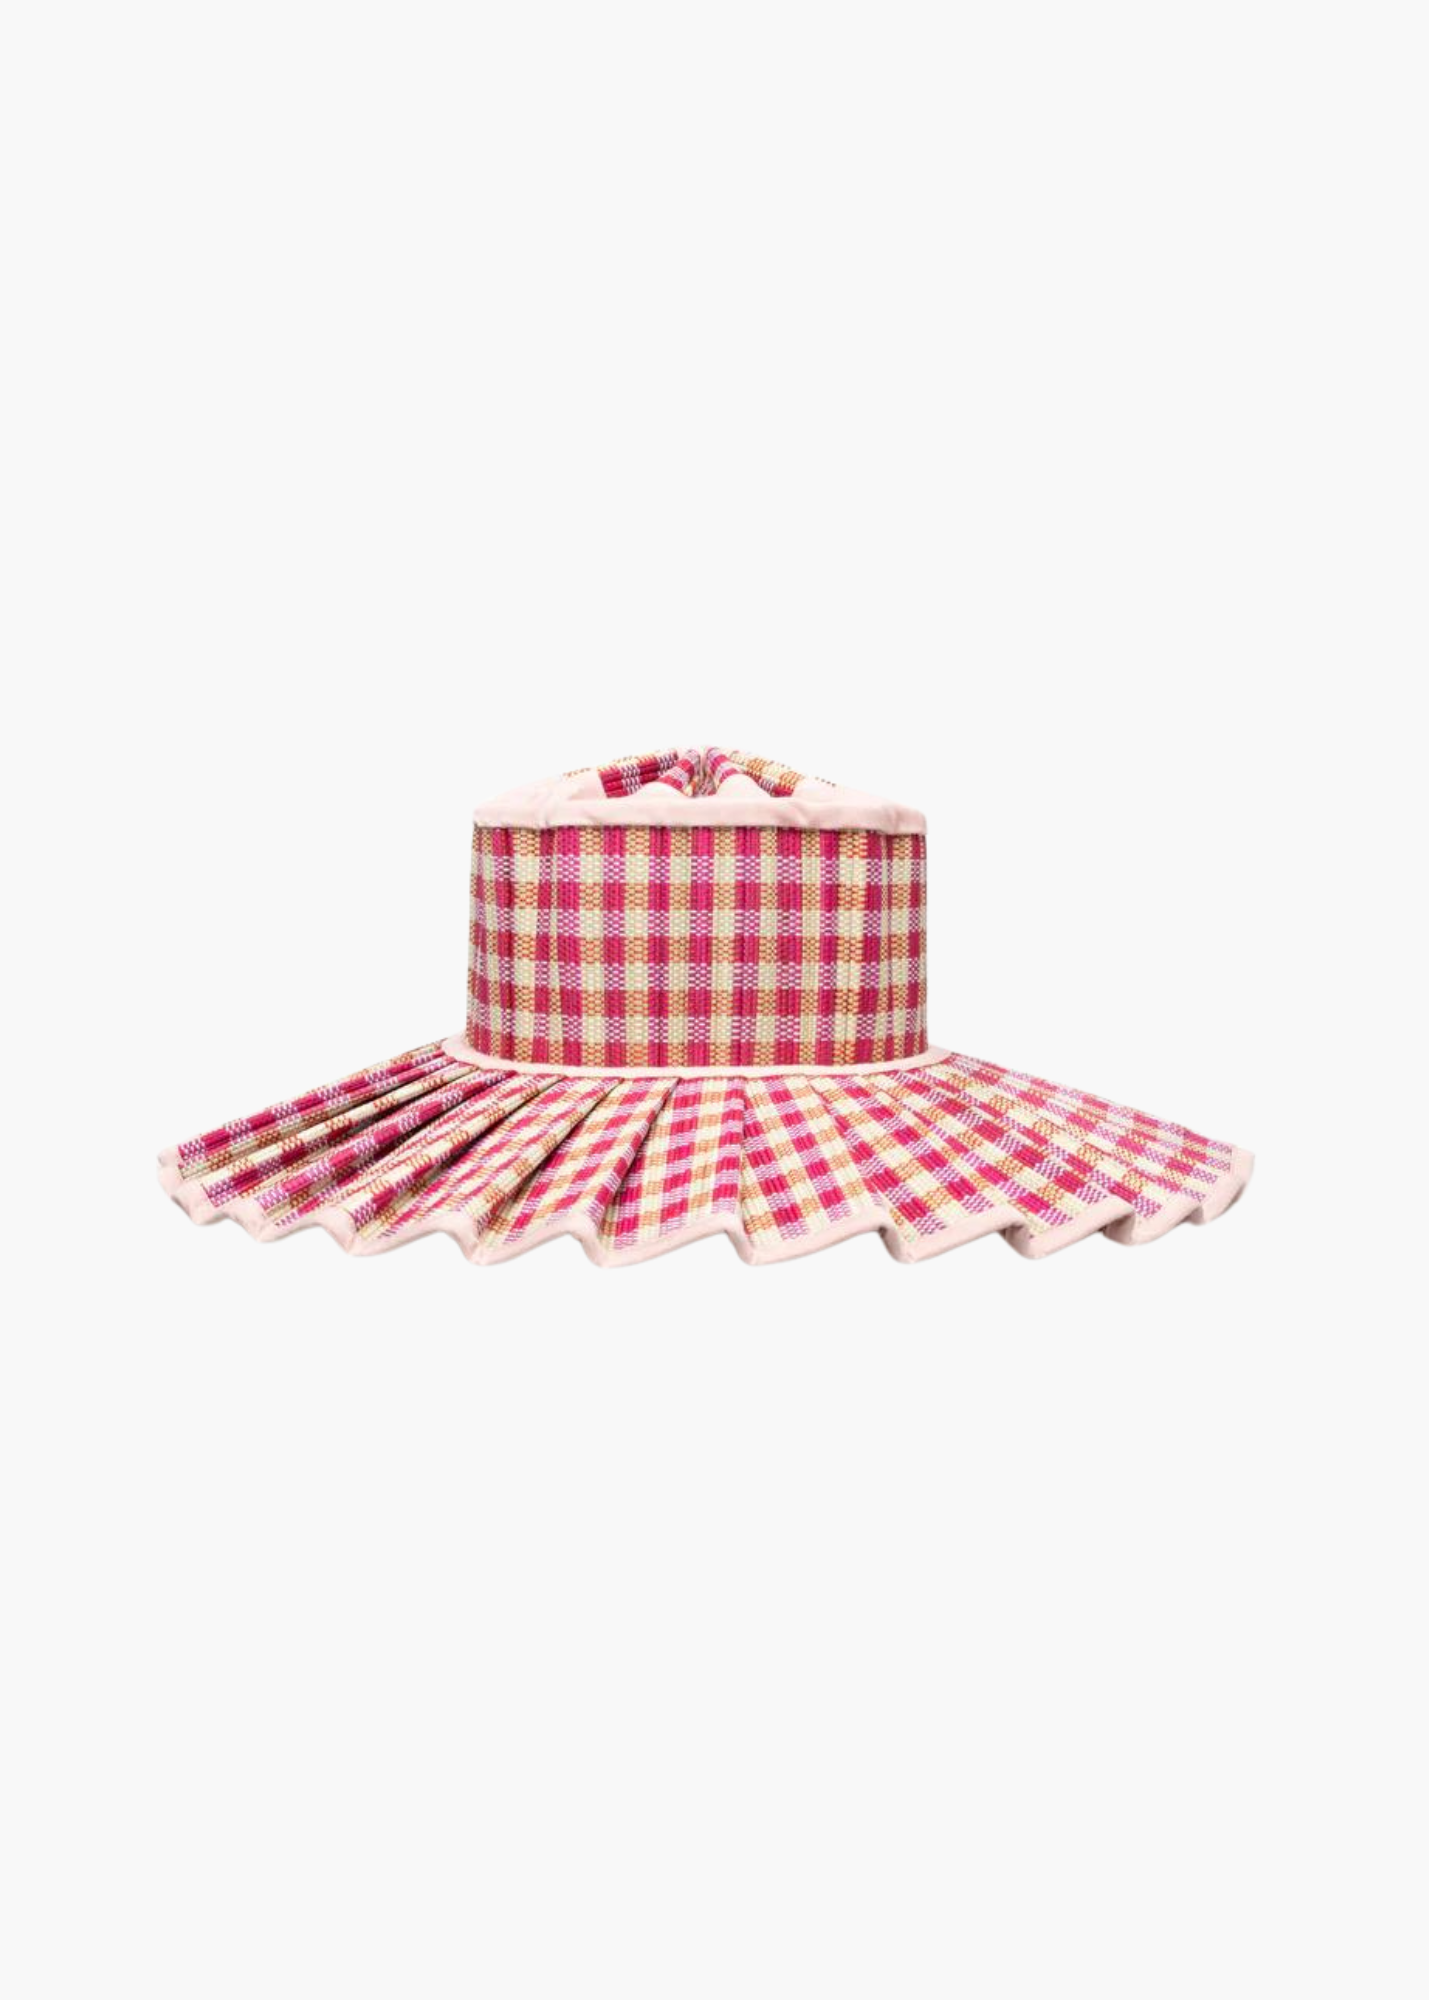 Lorna Murray Women's Santa Barbara Capri Packable Hat | Maxi